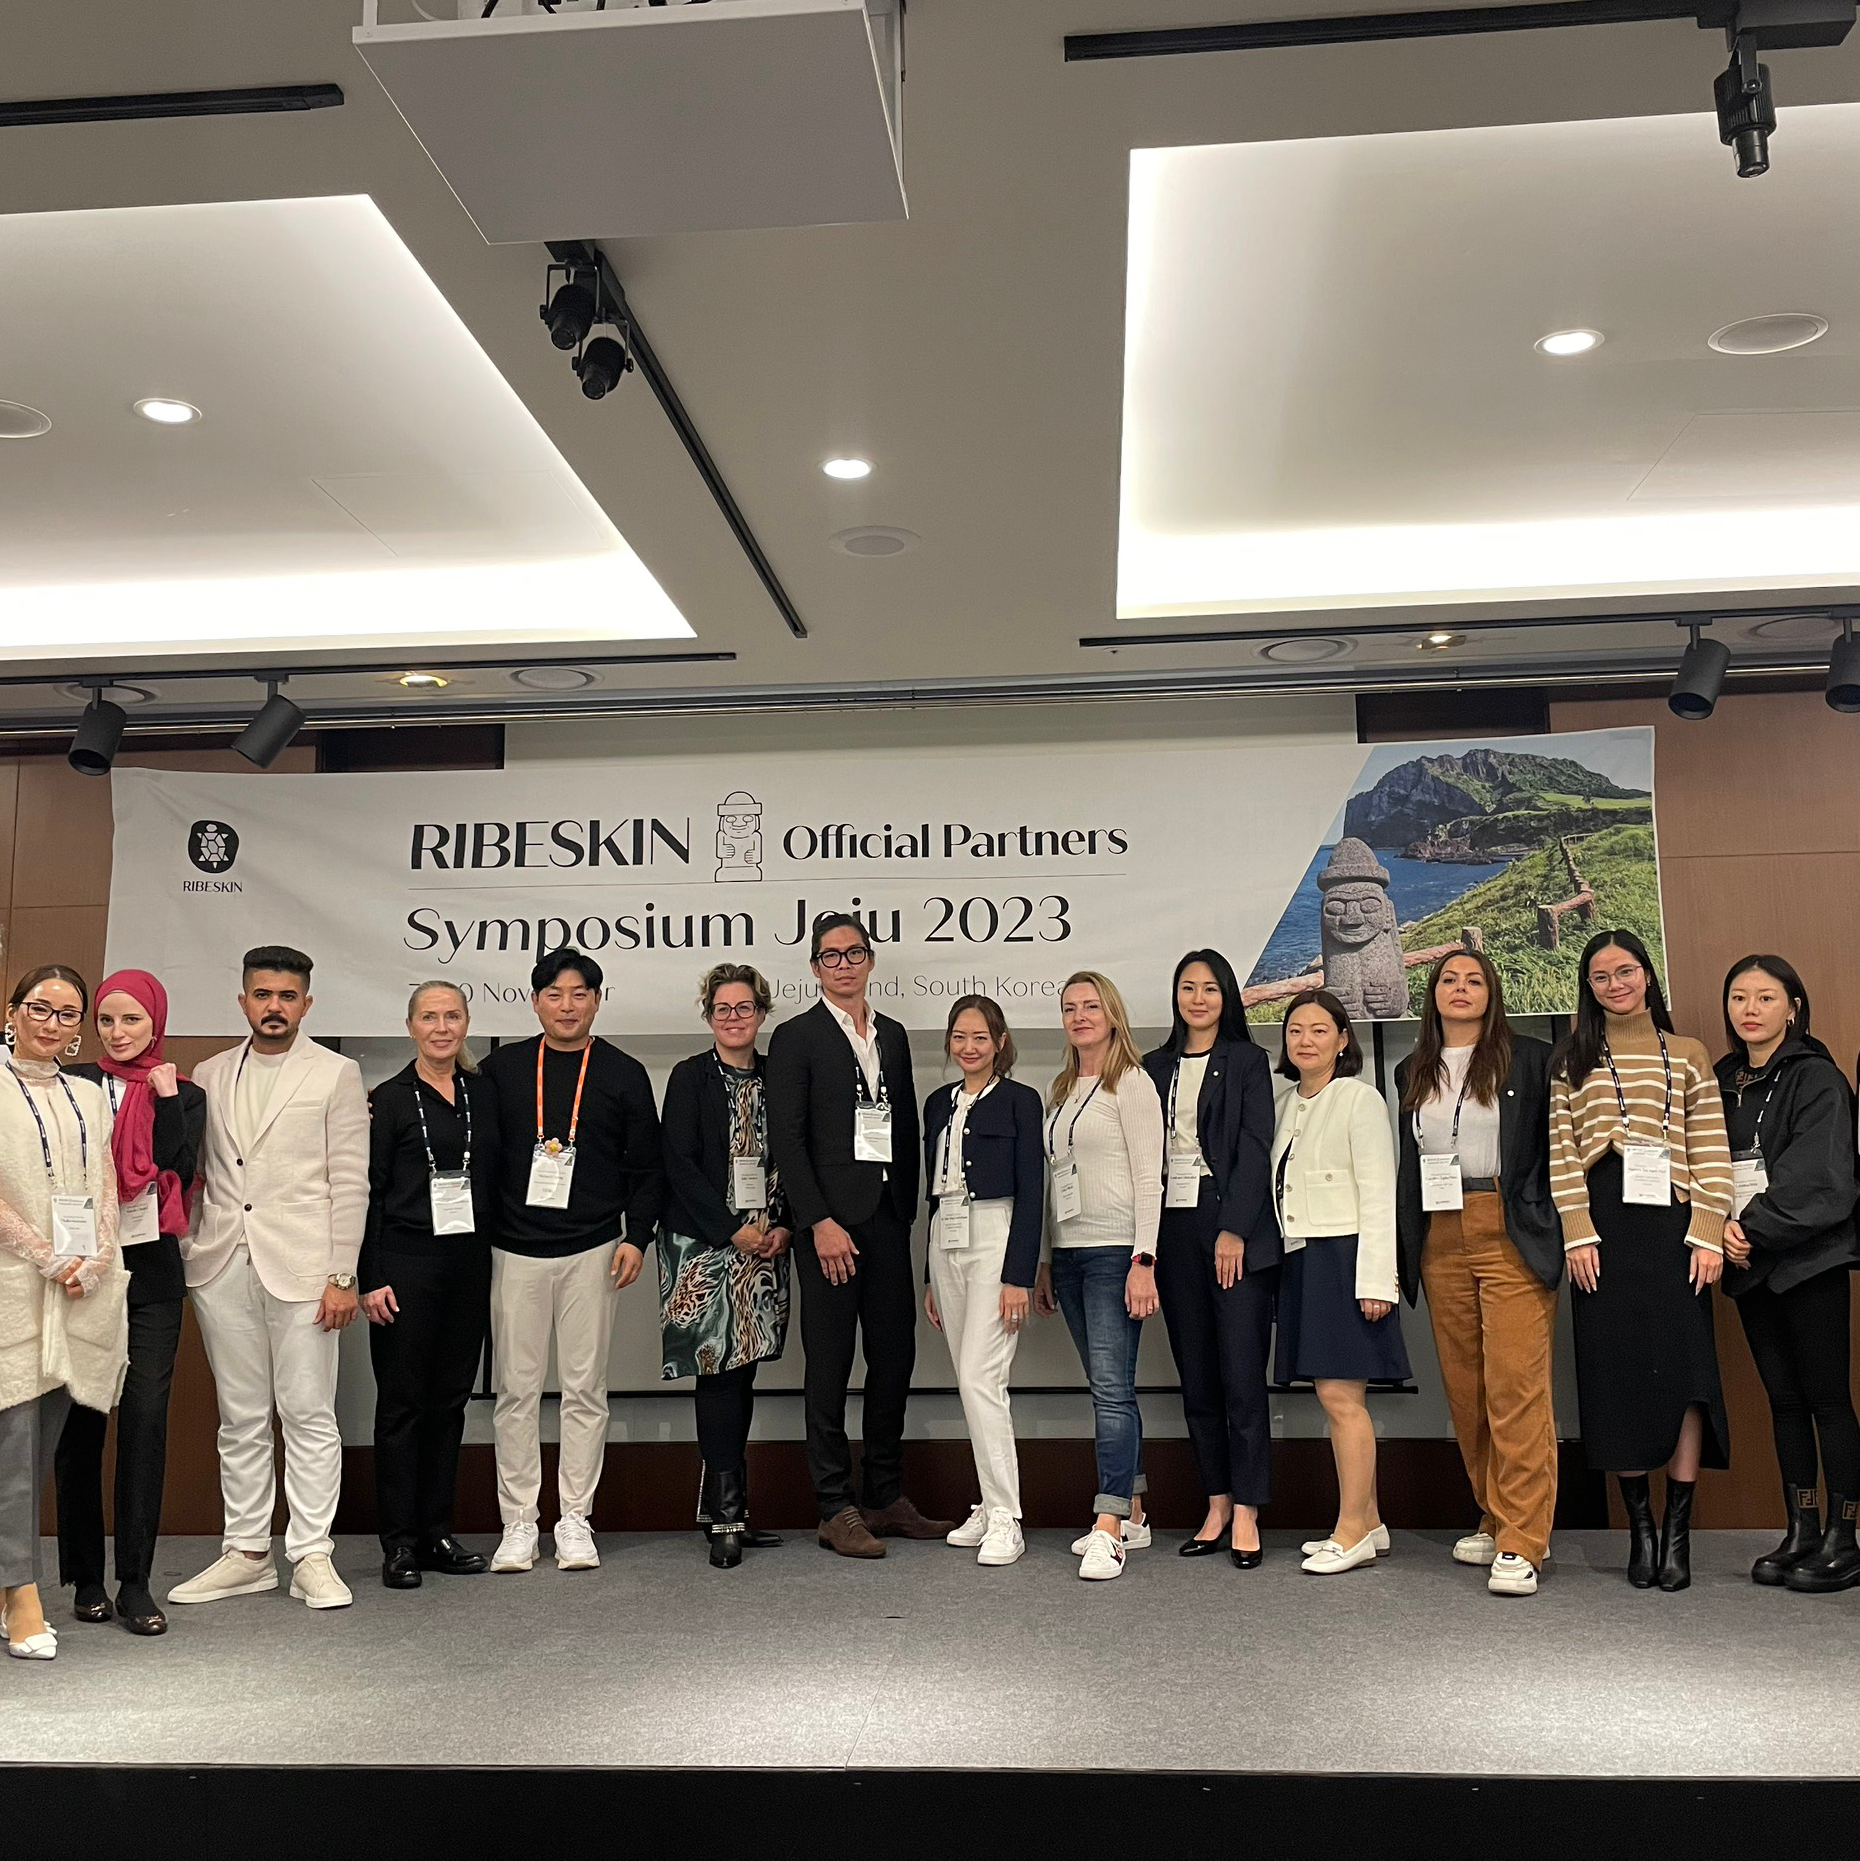 Cảm ơn Hội nghị chuyên đề RIBESKIN x Pyfaesthetic tại Jeju 2023!